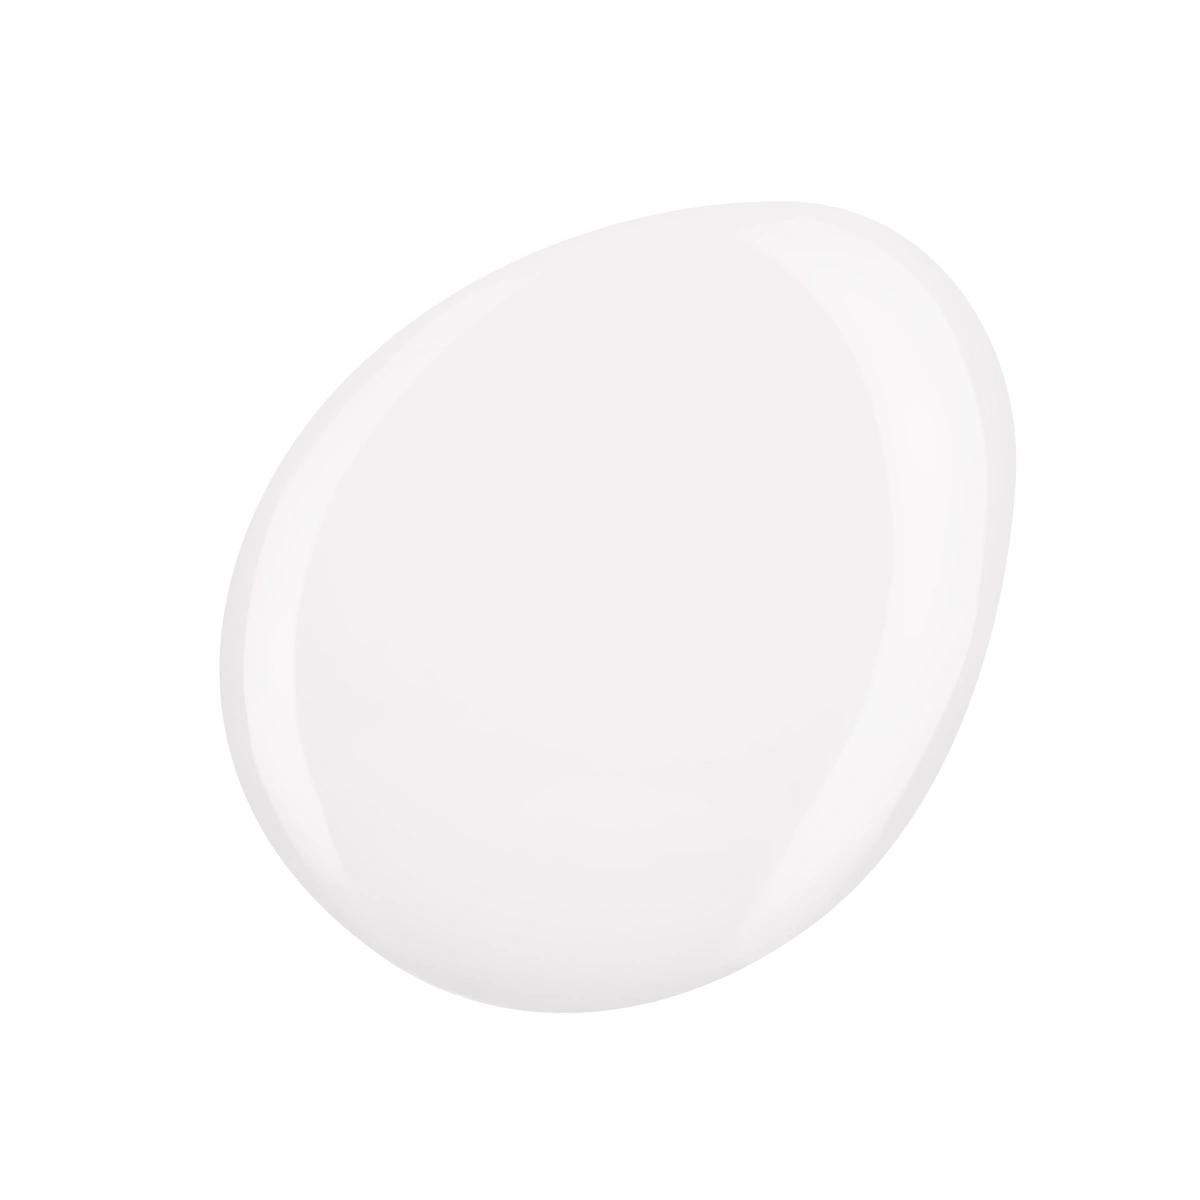 KINETICS Expert Line - Mléčně bílý stavební gel - Builder Gel - Milky White, 15g